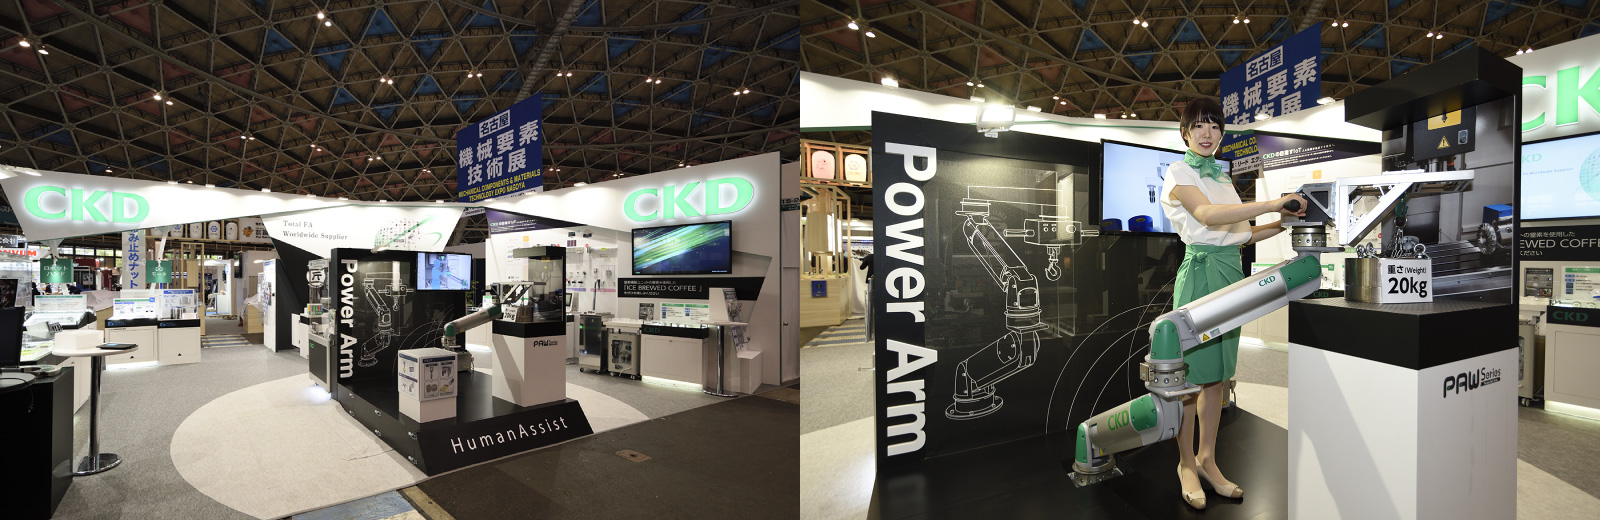 （左）第5届[名古屋]机械元件技术展览会中CKD的展厅。（右）机械助力臂PAW系列，因外观紧凑、圆润，是让人感到舒适的设计。